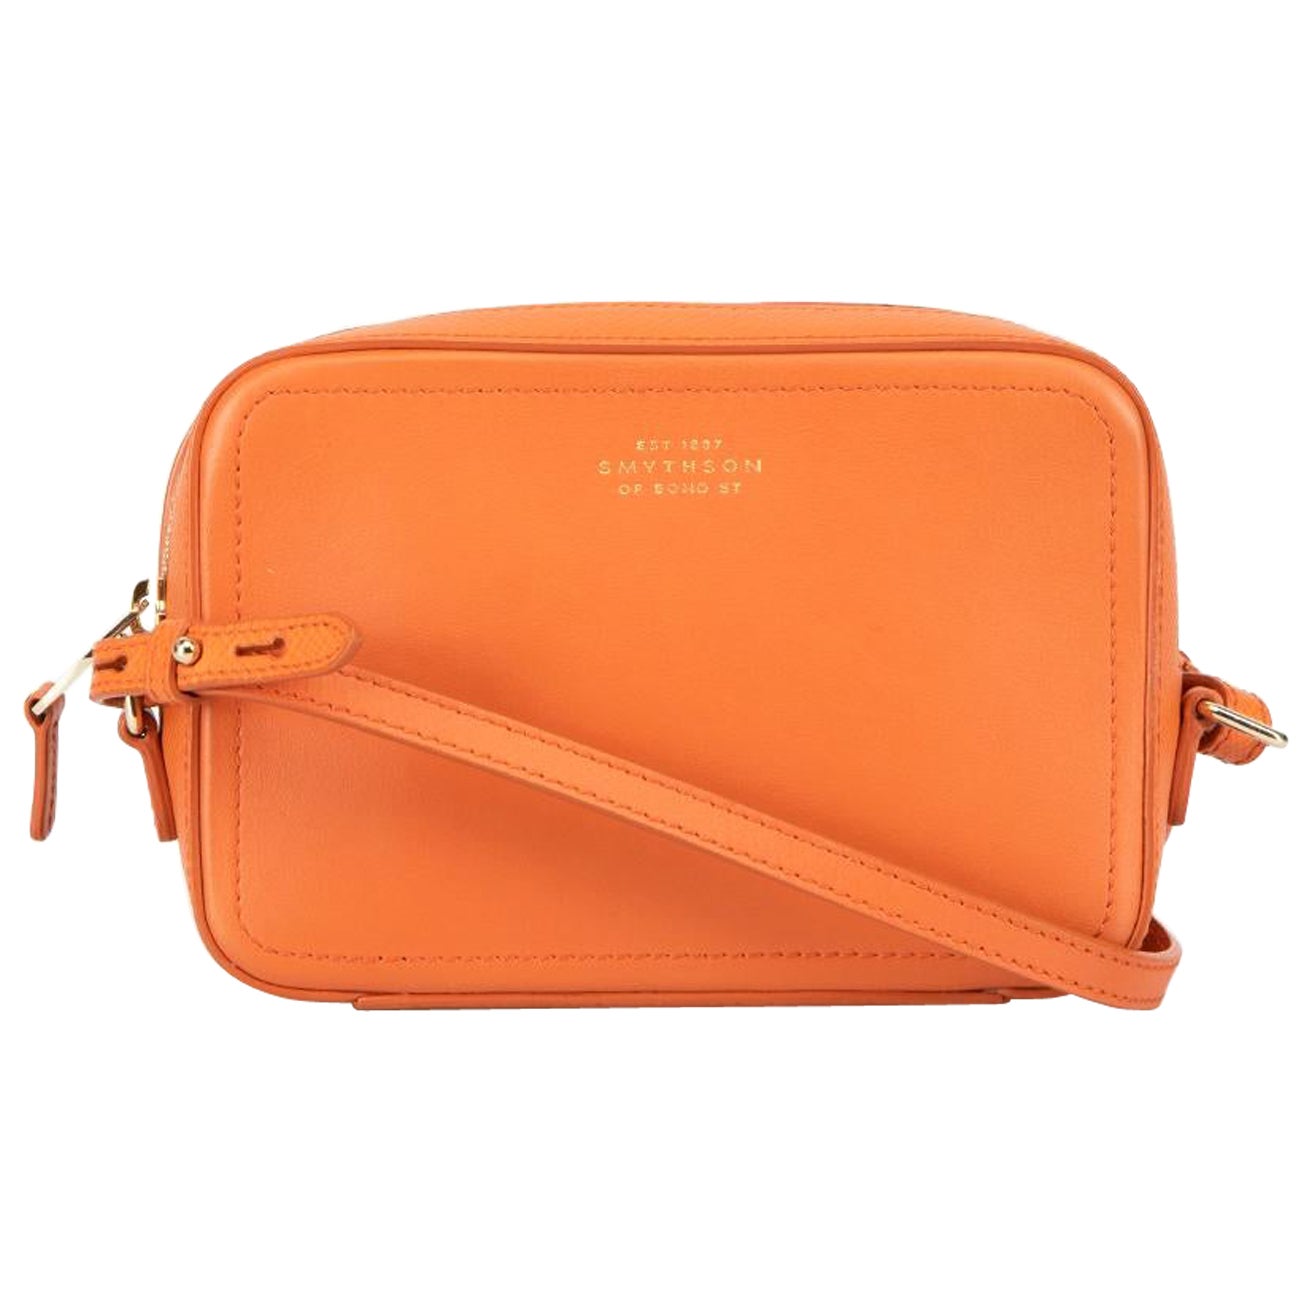 Smythson Orange Leather Crossbody Bag For Sale